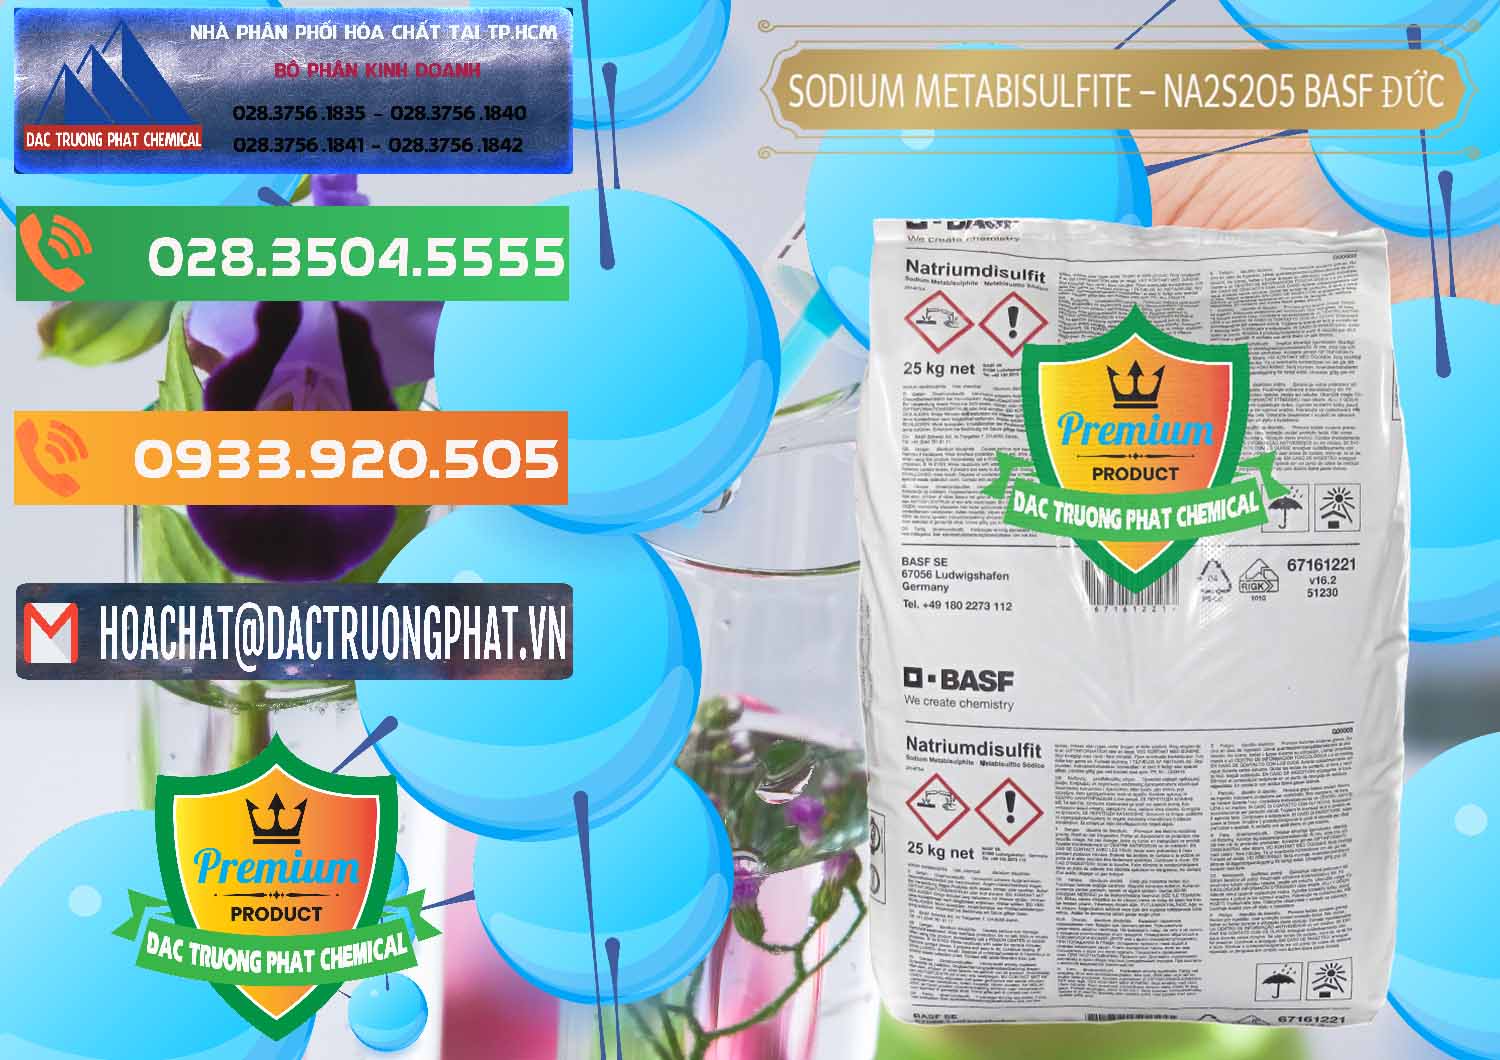 Cty bán _ cung cấp Sodium Metabisulfite - NA2S2O5 Food Grade BASF Đức Germany - 0143 - Công ty nhập khẩu - cung cấp hóa chất tại TP.HCM - hoachatxulynuoc.com.vn